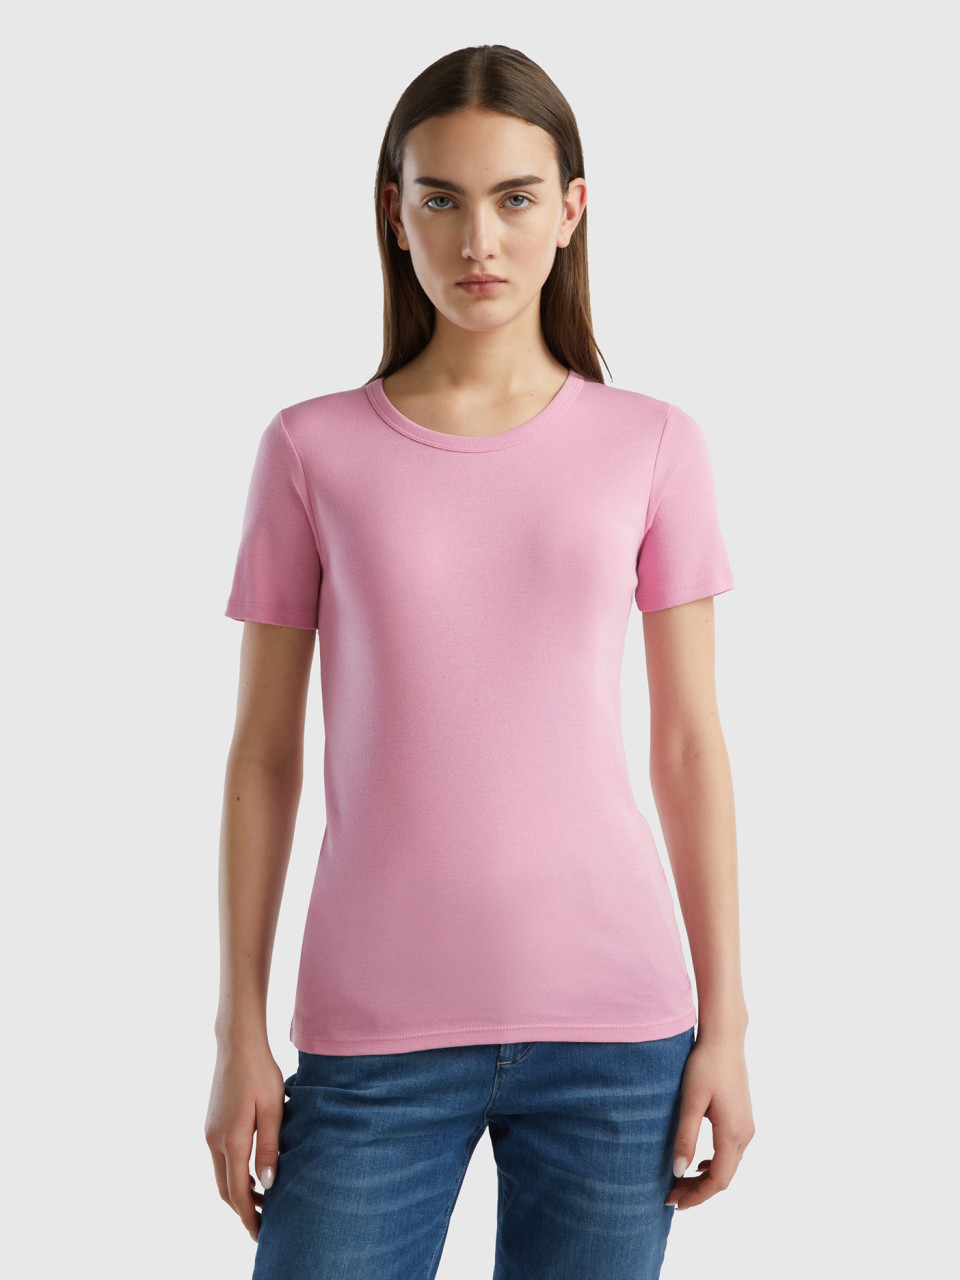 Benetton, Long Fiber Cotton T-shirt, Pastel Pink, Women